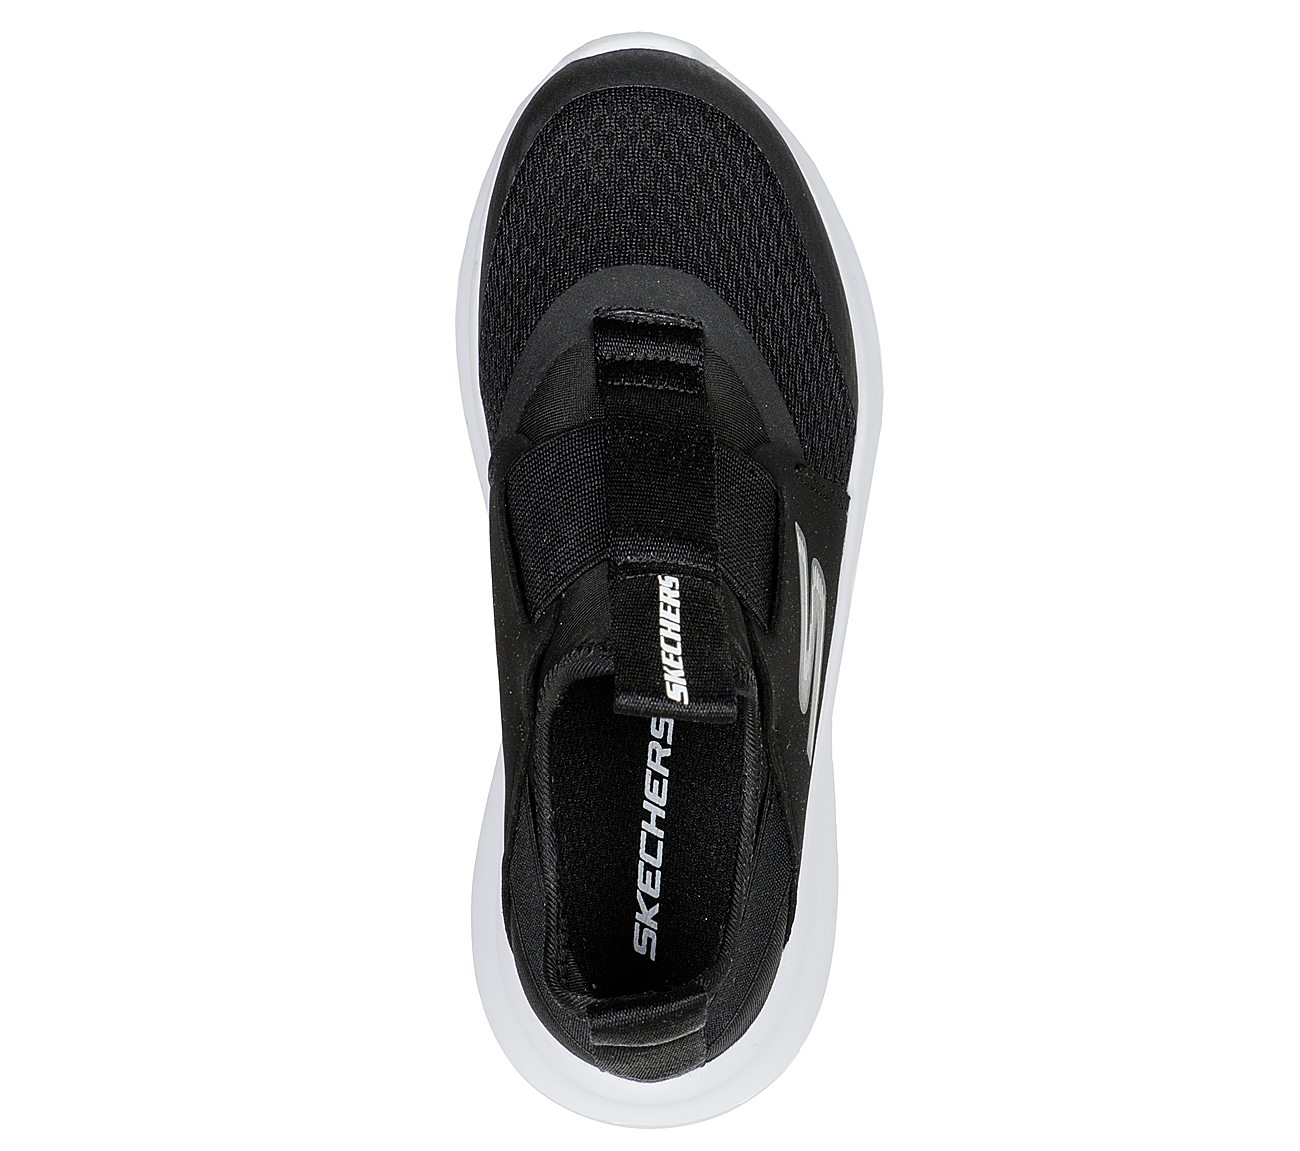 SKECH FAST, BLACK/WHITE Footwear Top View